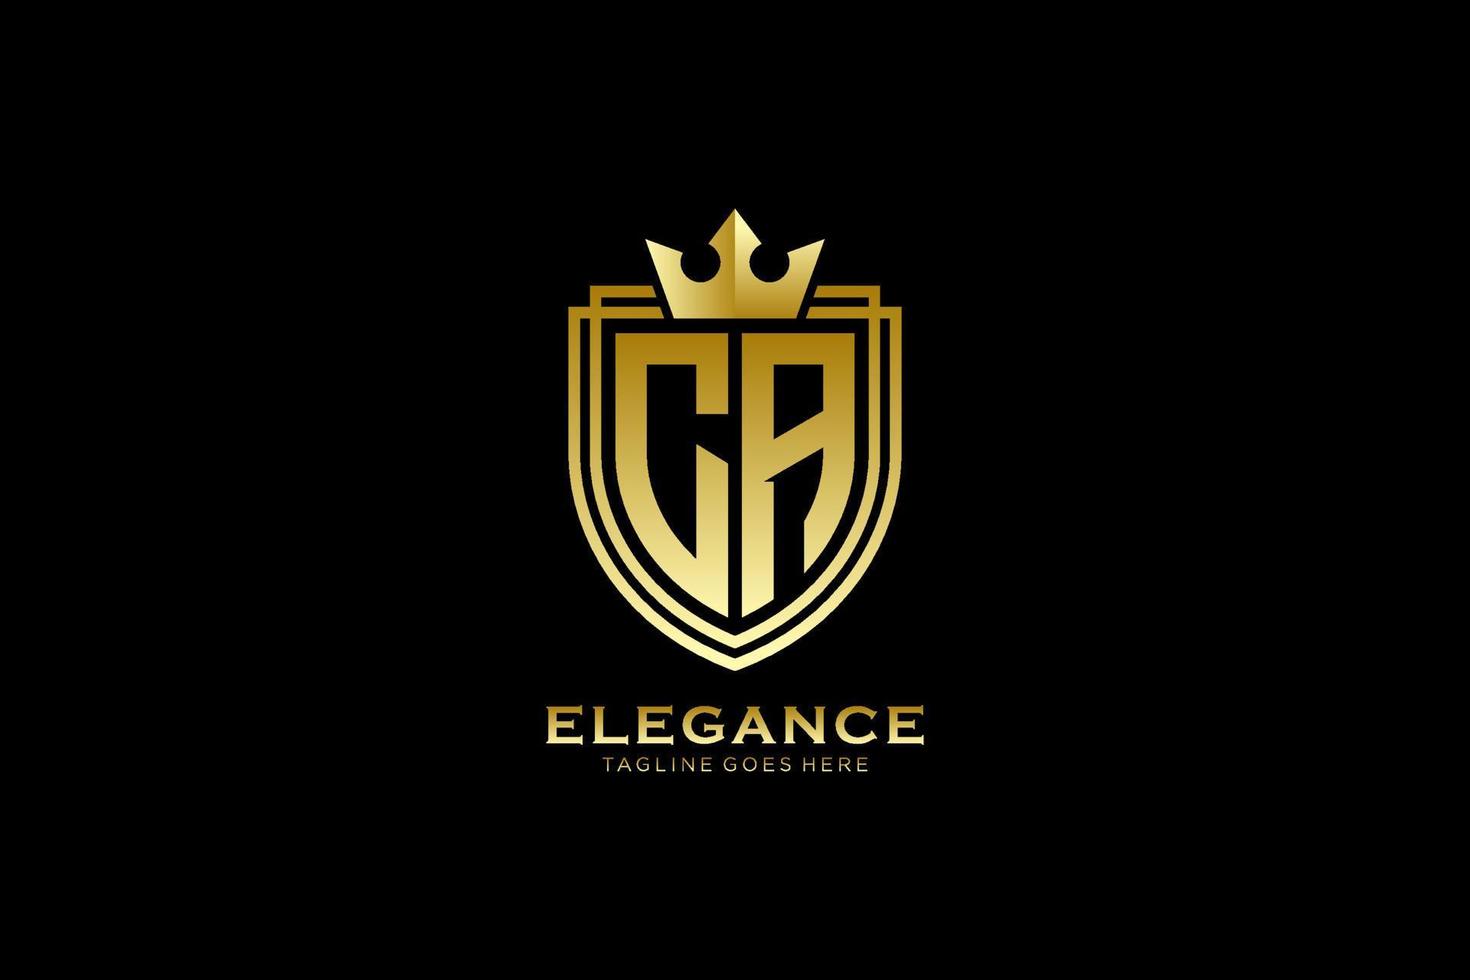 logotipo de monograma de lujo inicial ca elegante o plantilla de insignia con pergaminos y corona real - perfecto para proyectos de marca de lujo vector